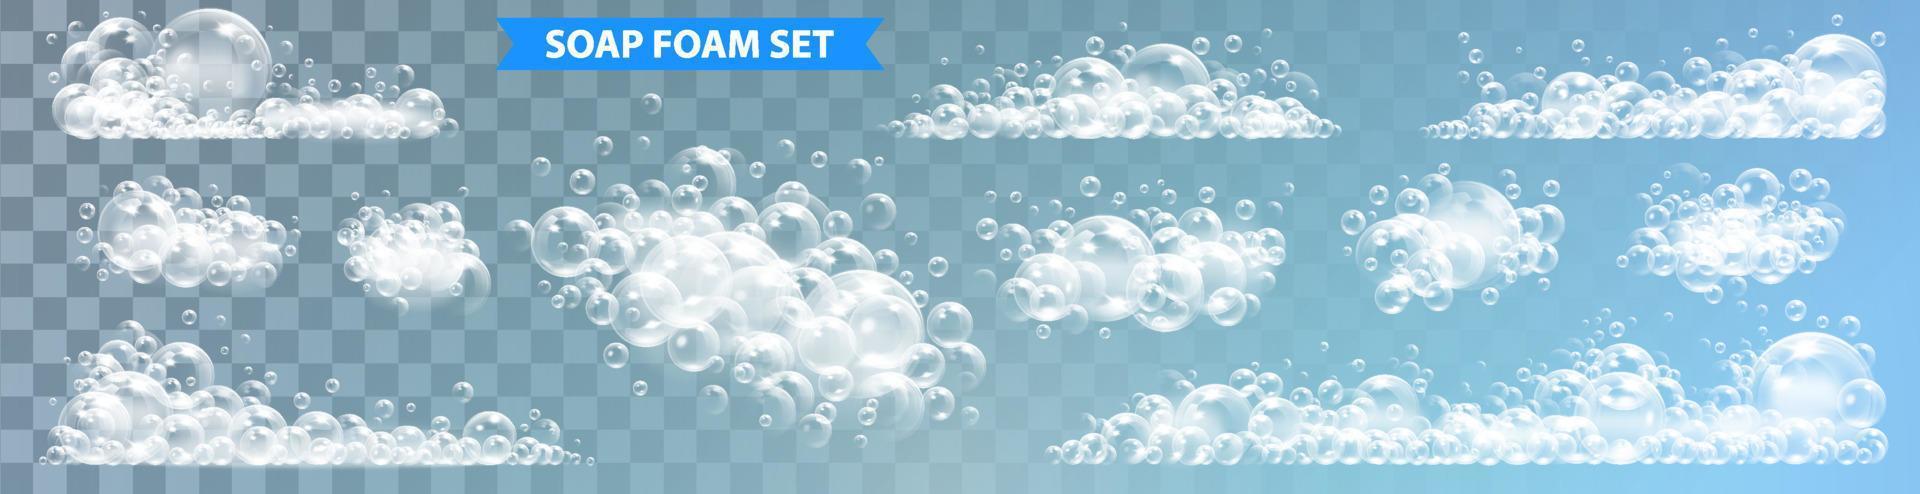 savon mousse avec bulles isolé vecteur illustration